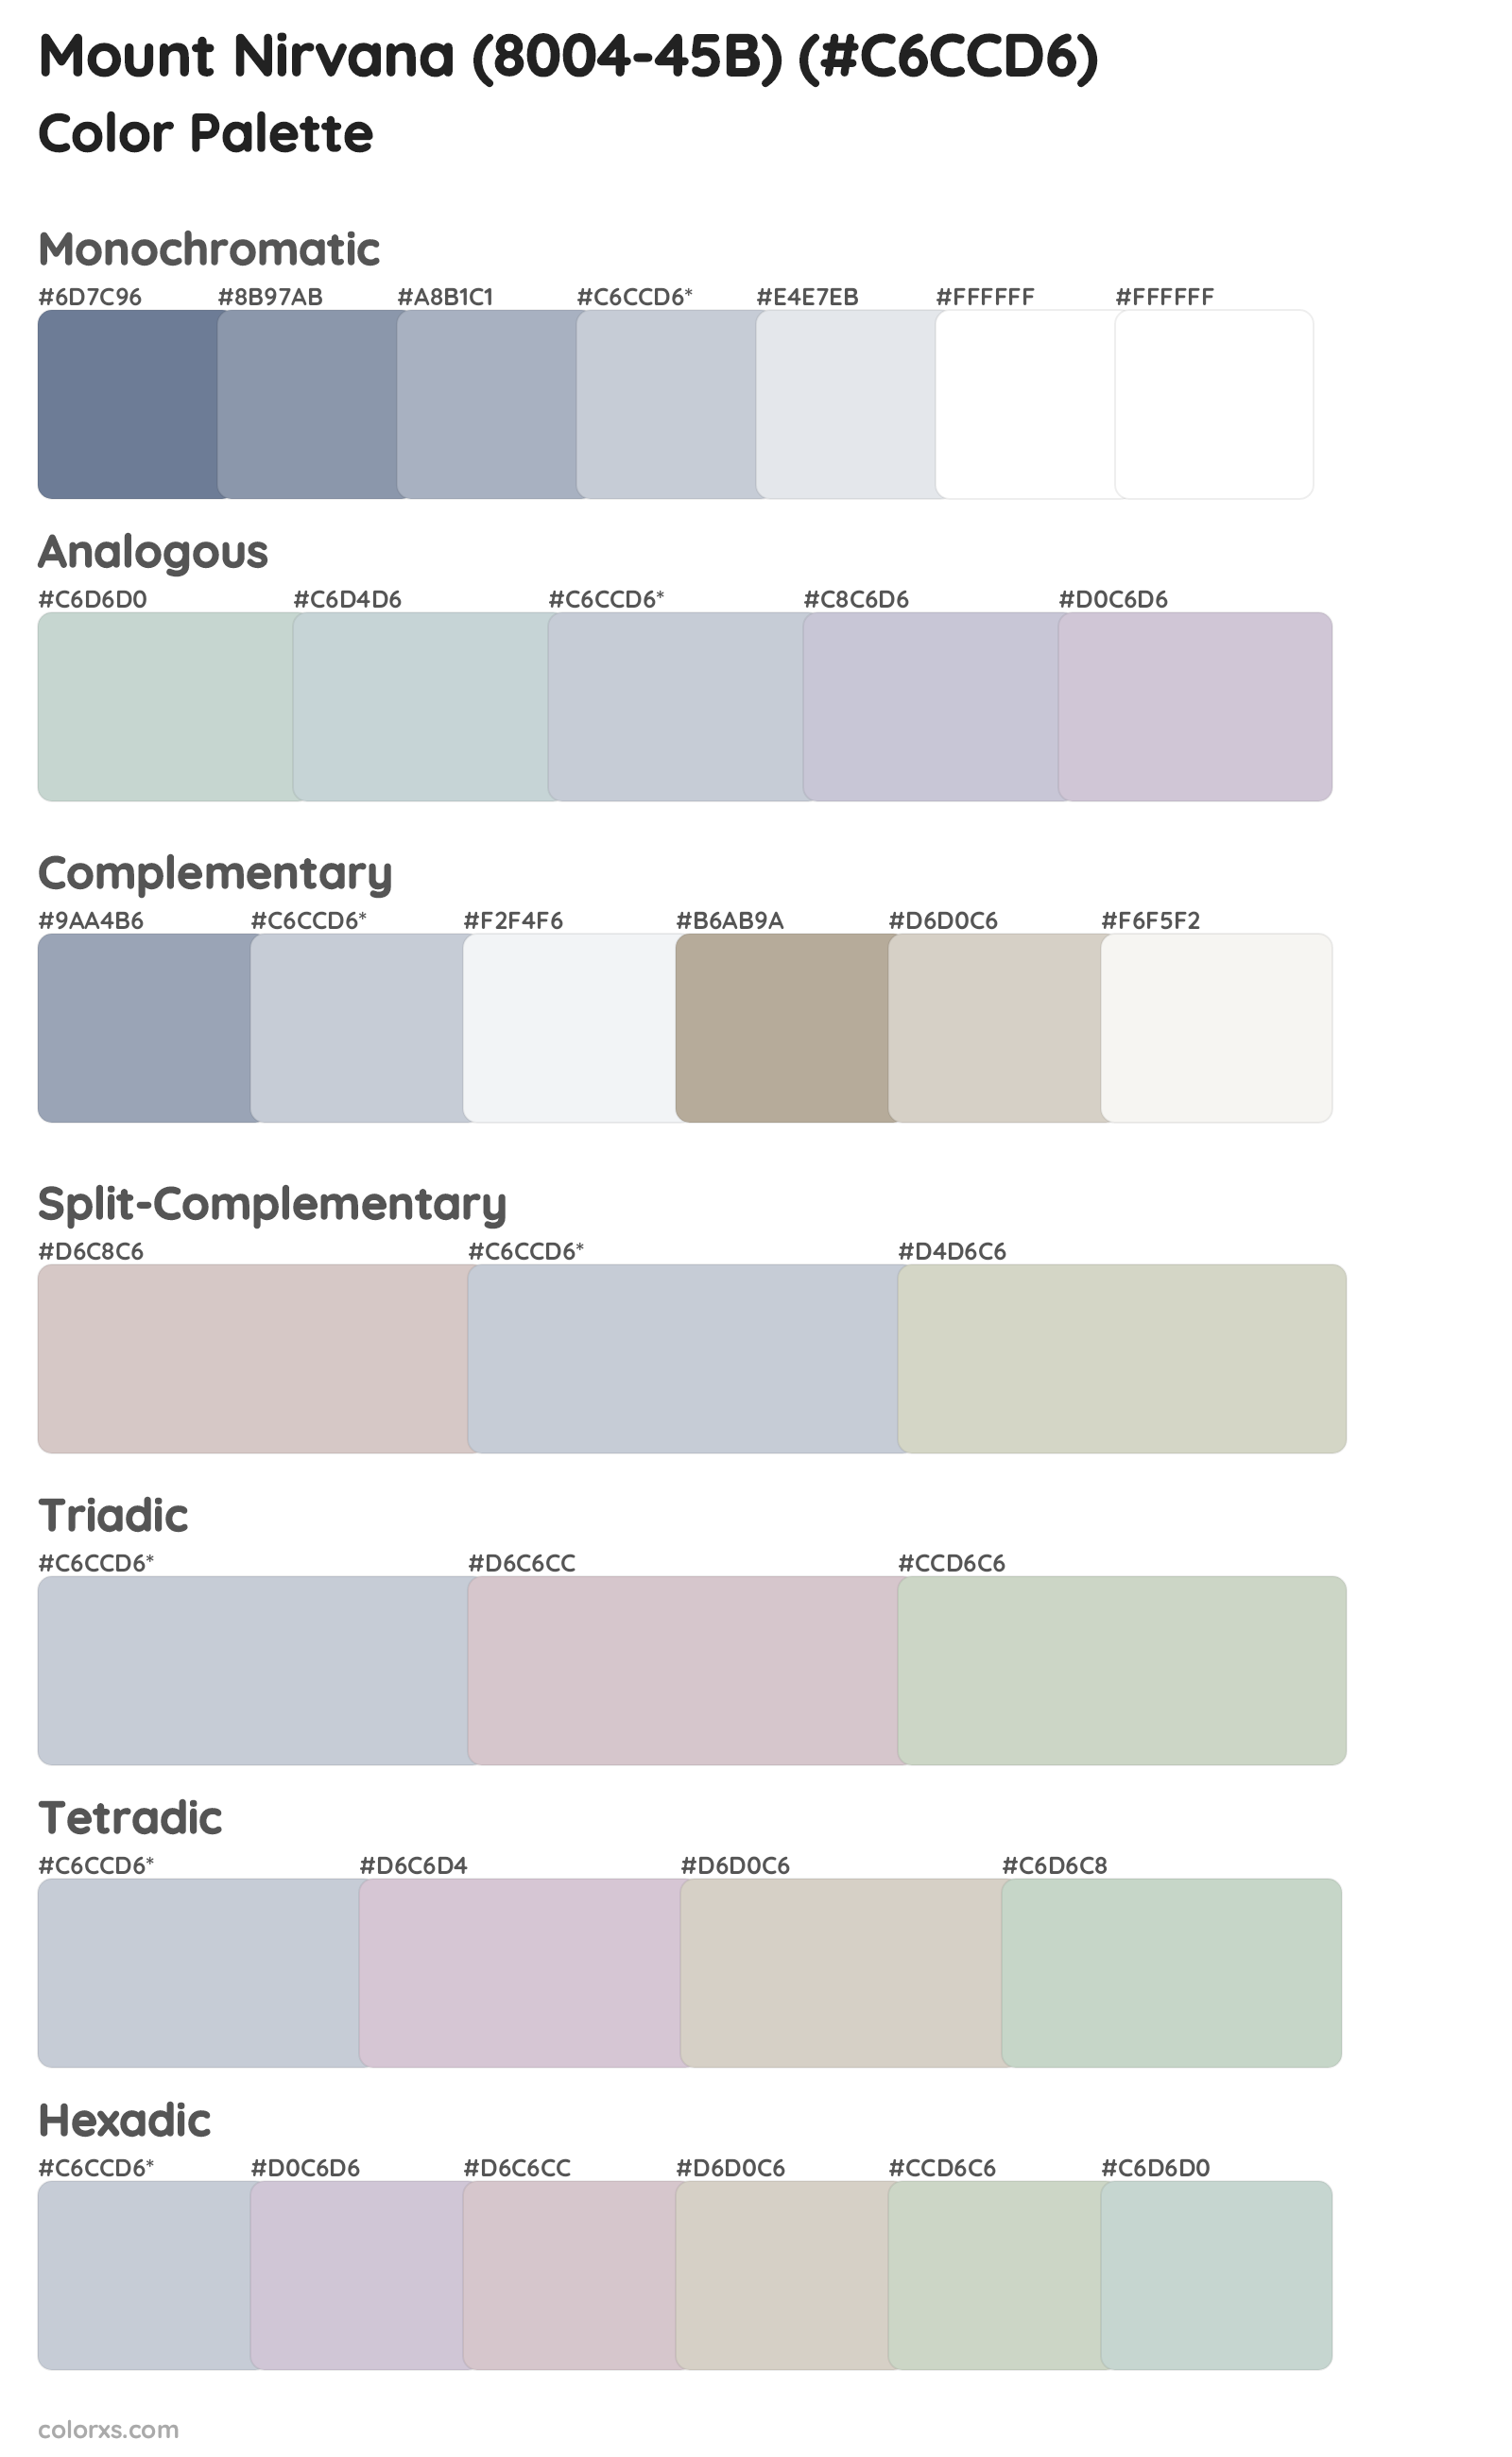 Mount Nirvana (8004-45B) Color Scheme Palettes